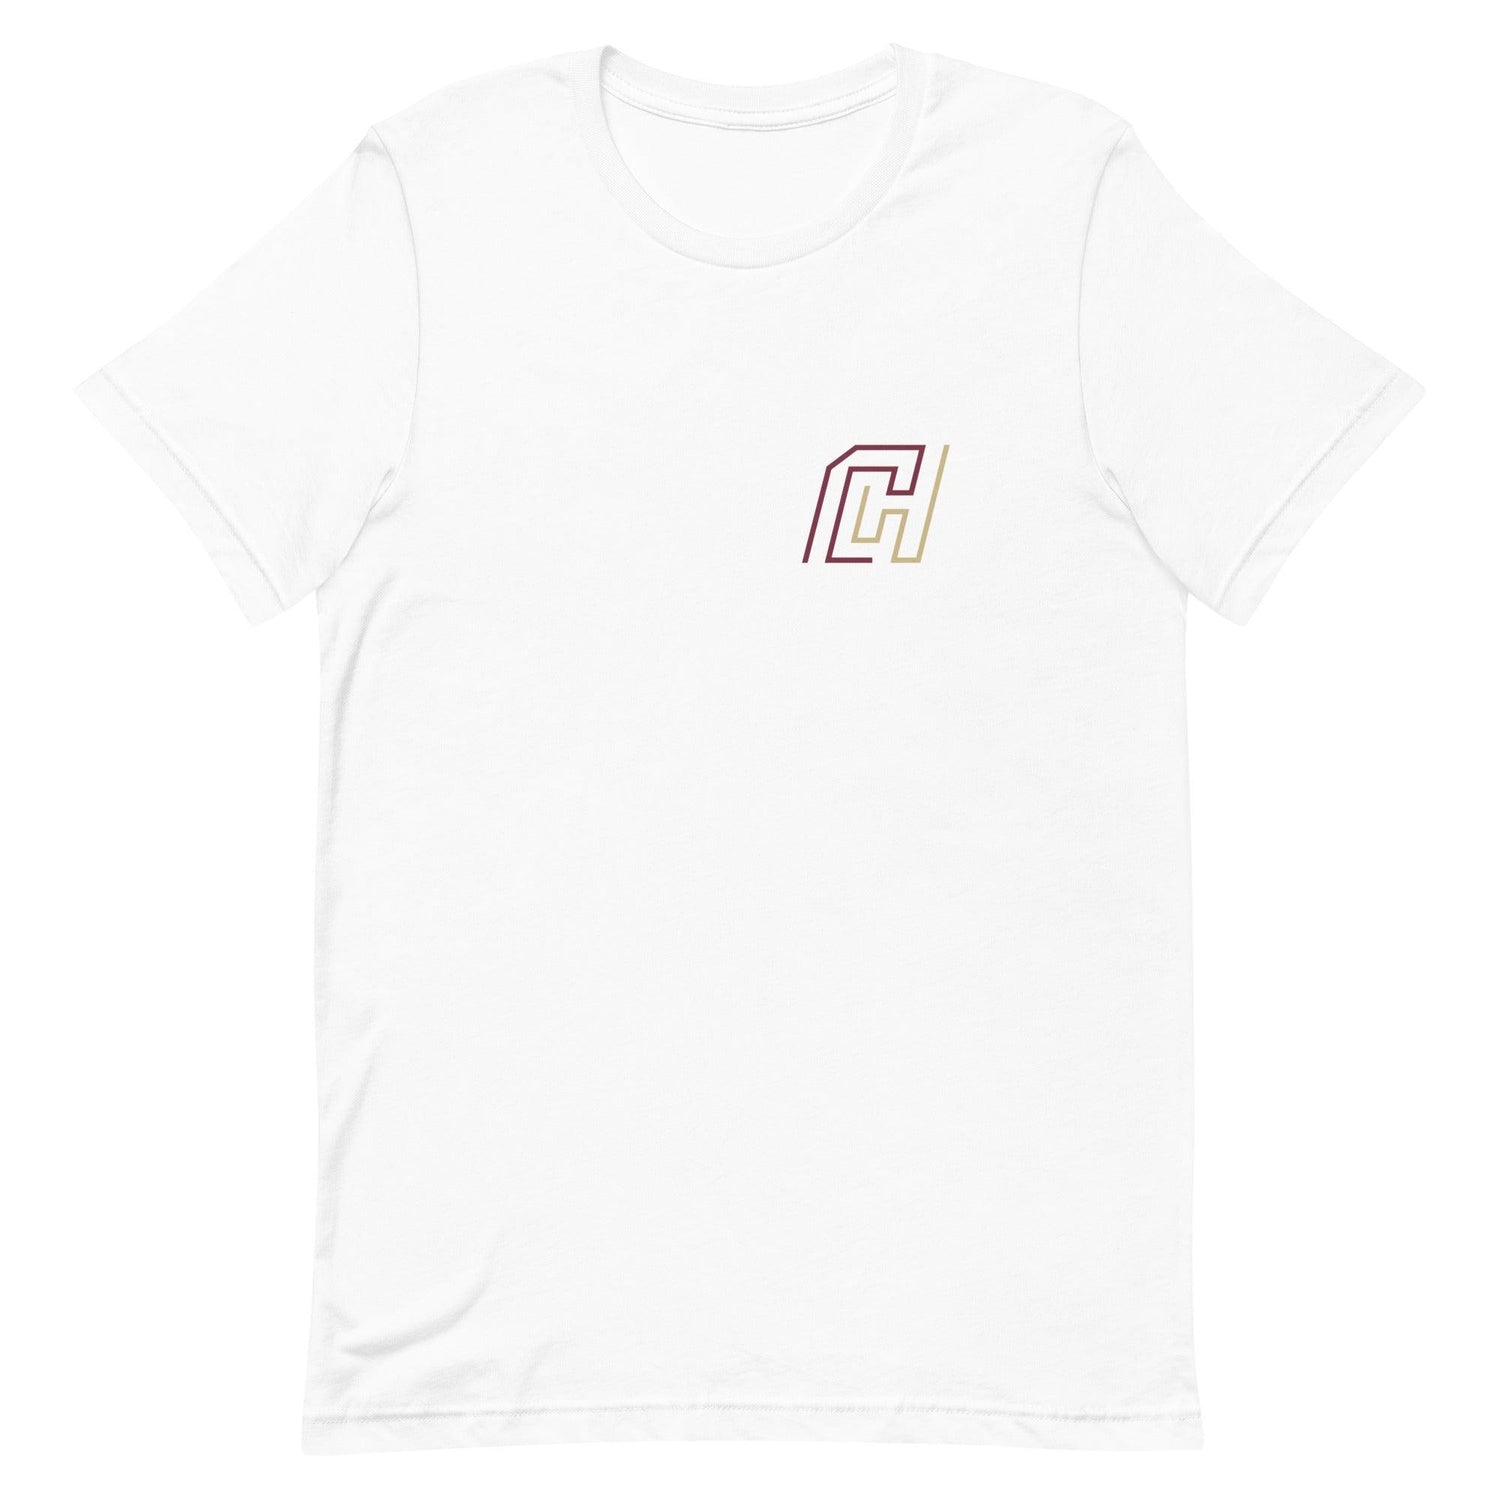 Caziah Holmes "Elite" t-shirt - Fan Arch